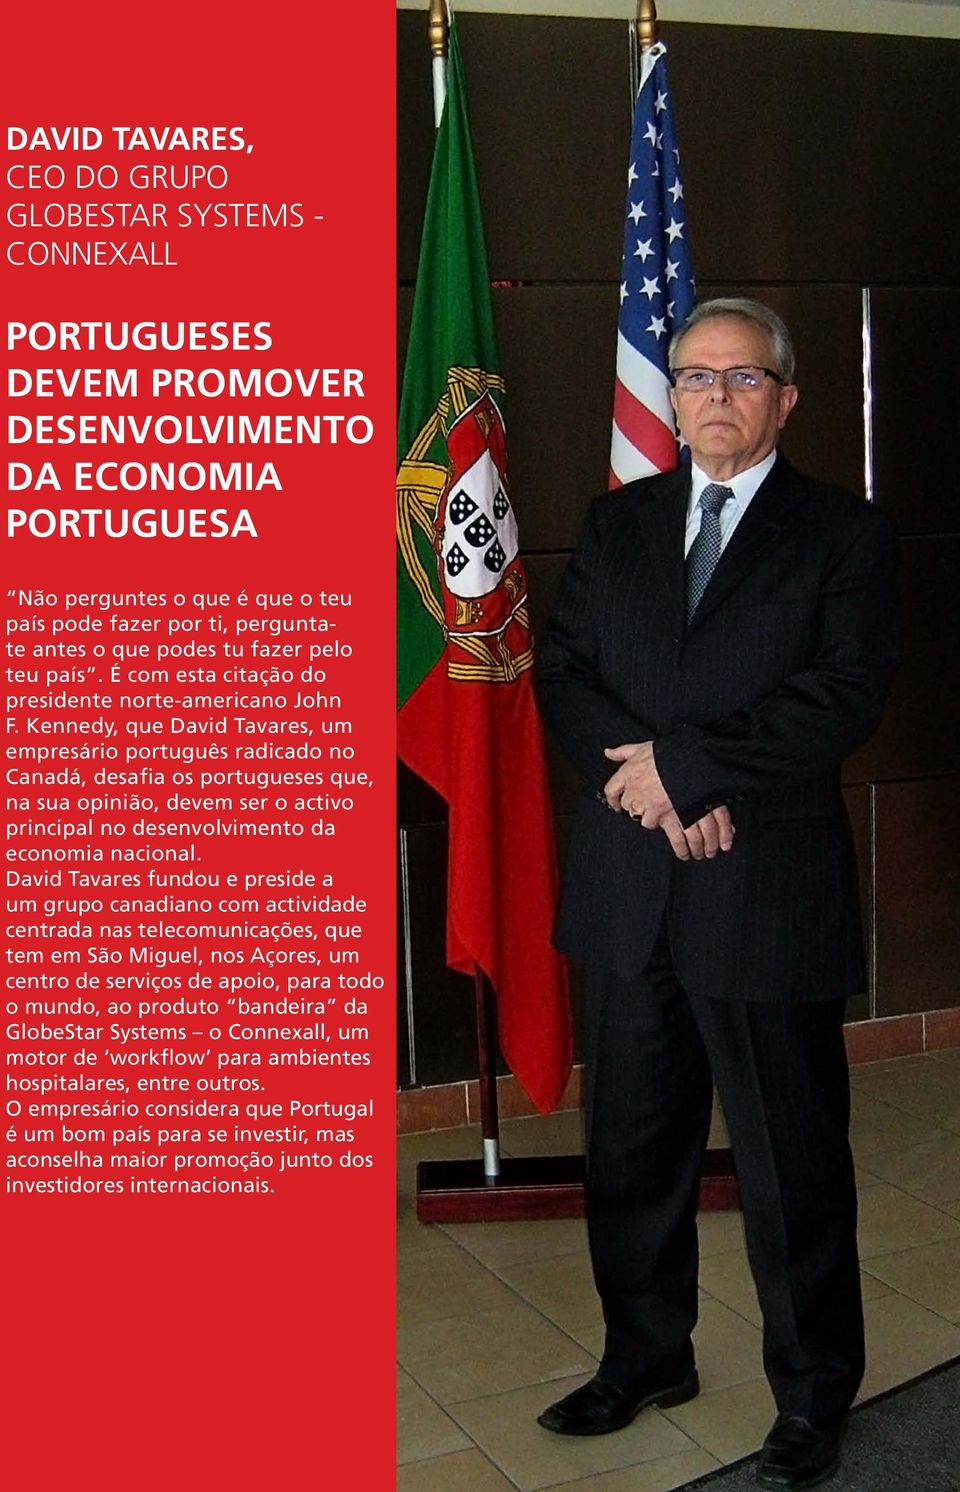 Kennedy, que David Tavares, um empresário português radicado no Canadá, desafia os portugueses que, na sua opinião, devem ser o activo principal no desenvolvimento da economia nacional.